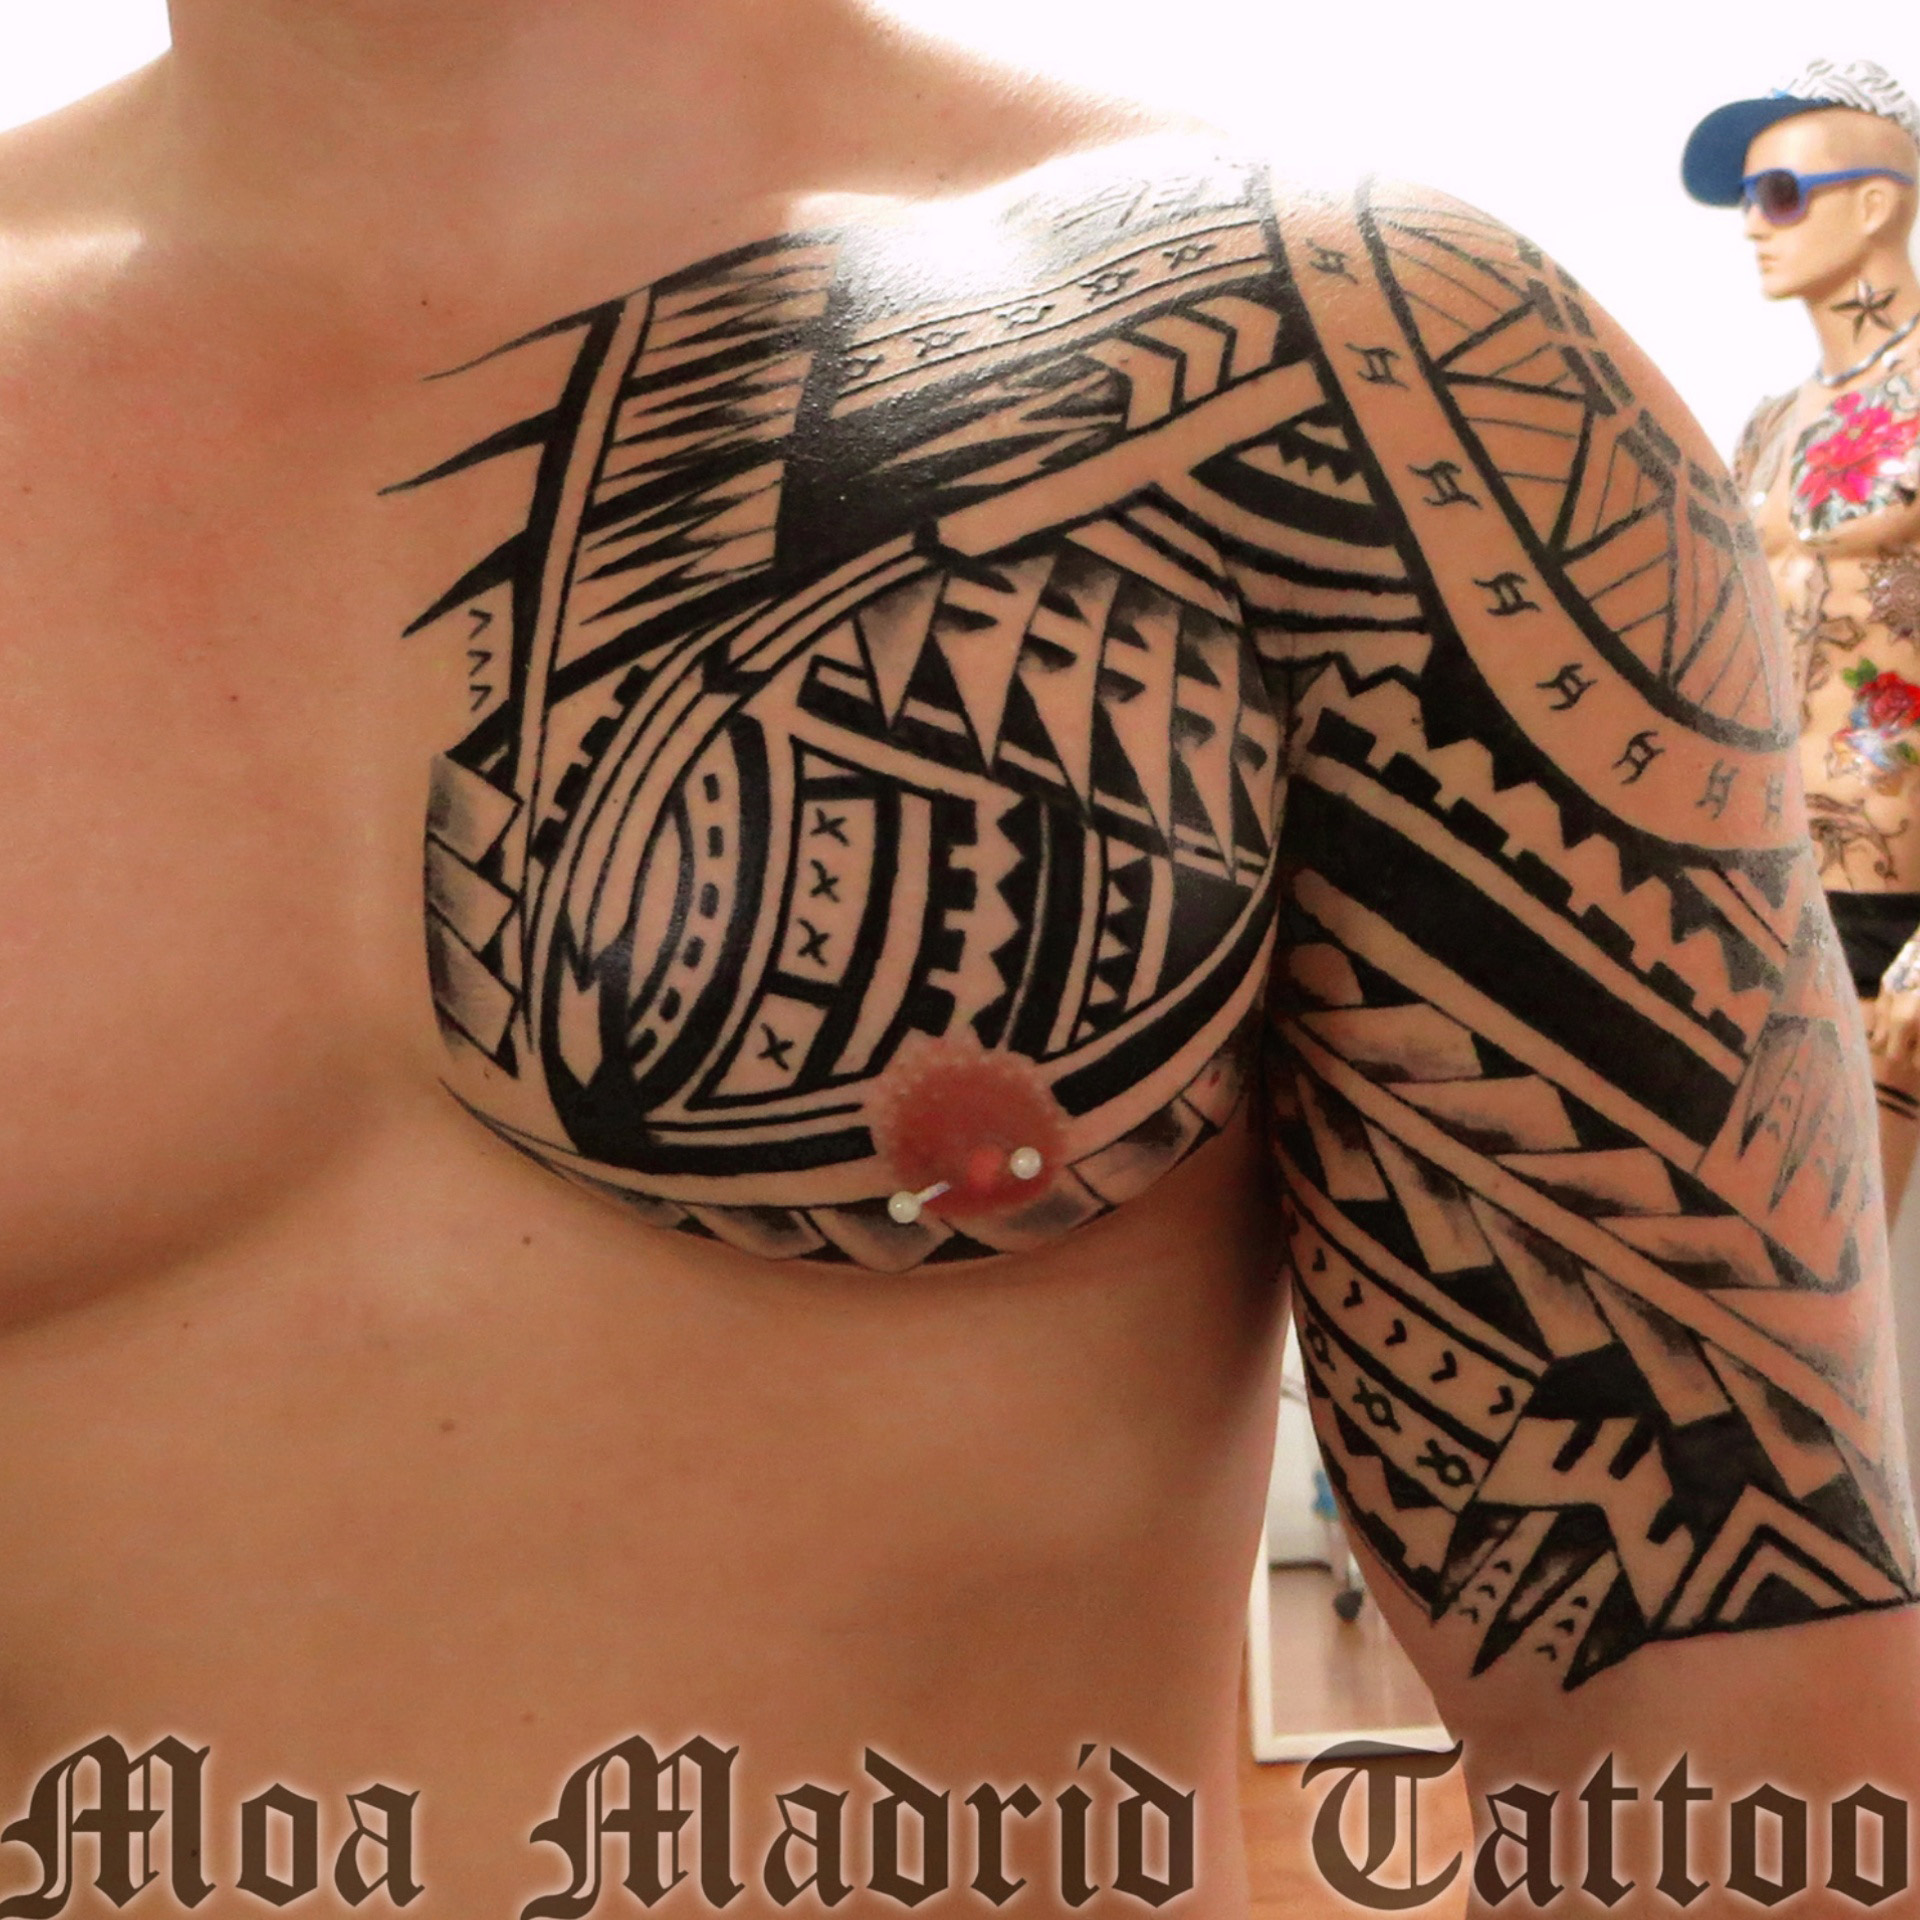 Tatuaje maorí en pectoral hombro y brazo